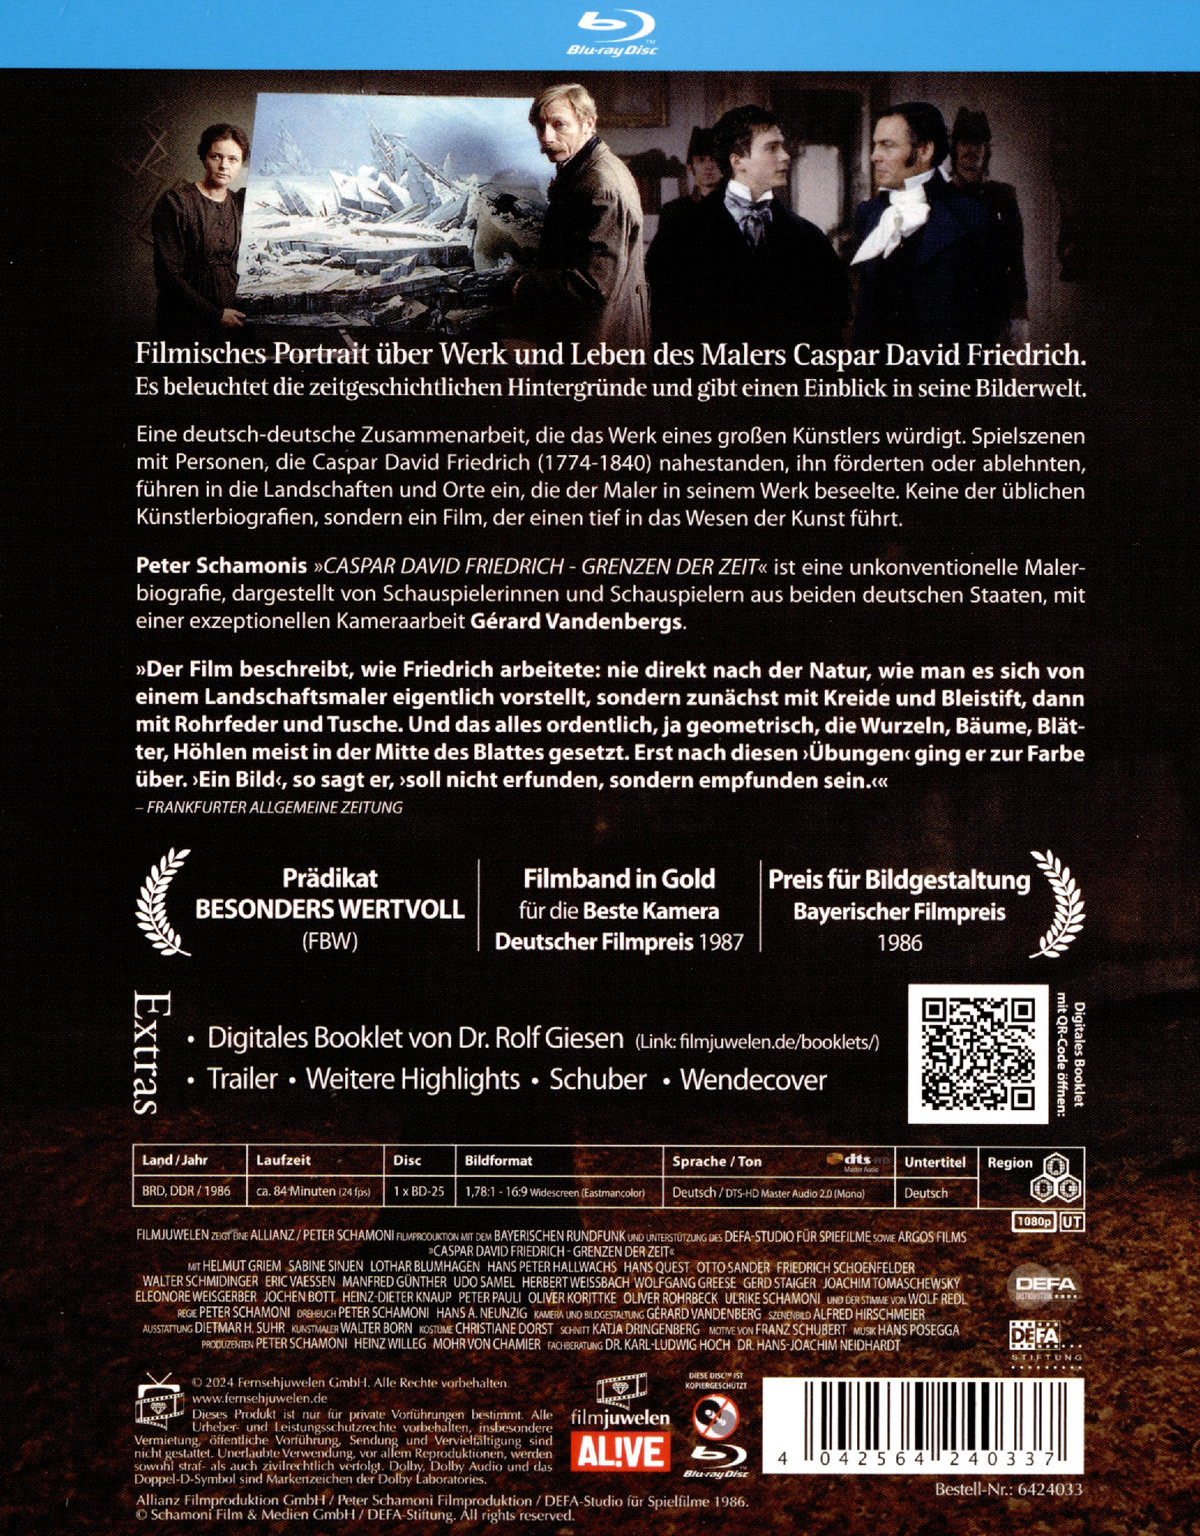 Caspar David Friedrich - Grenzen der Zeit (DEFA Filmjuwelen)  (Blu-ray Disc)